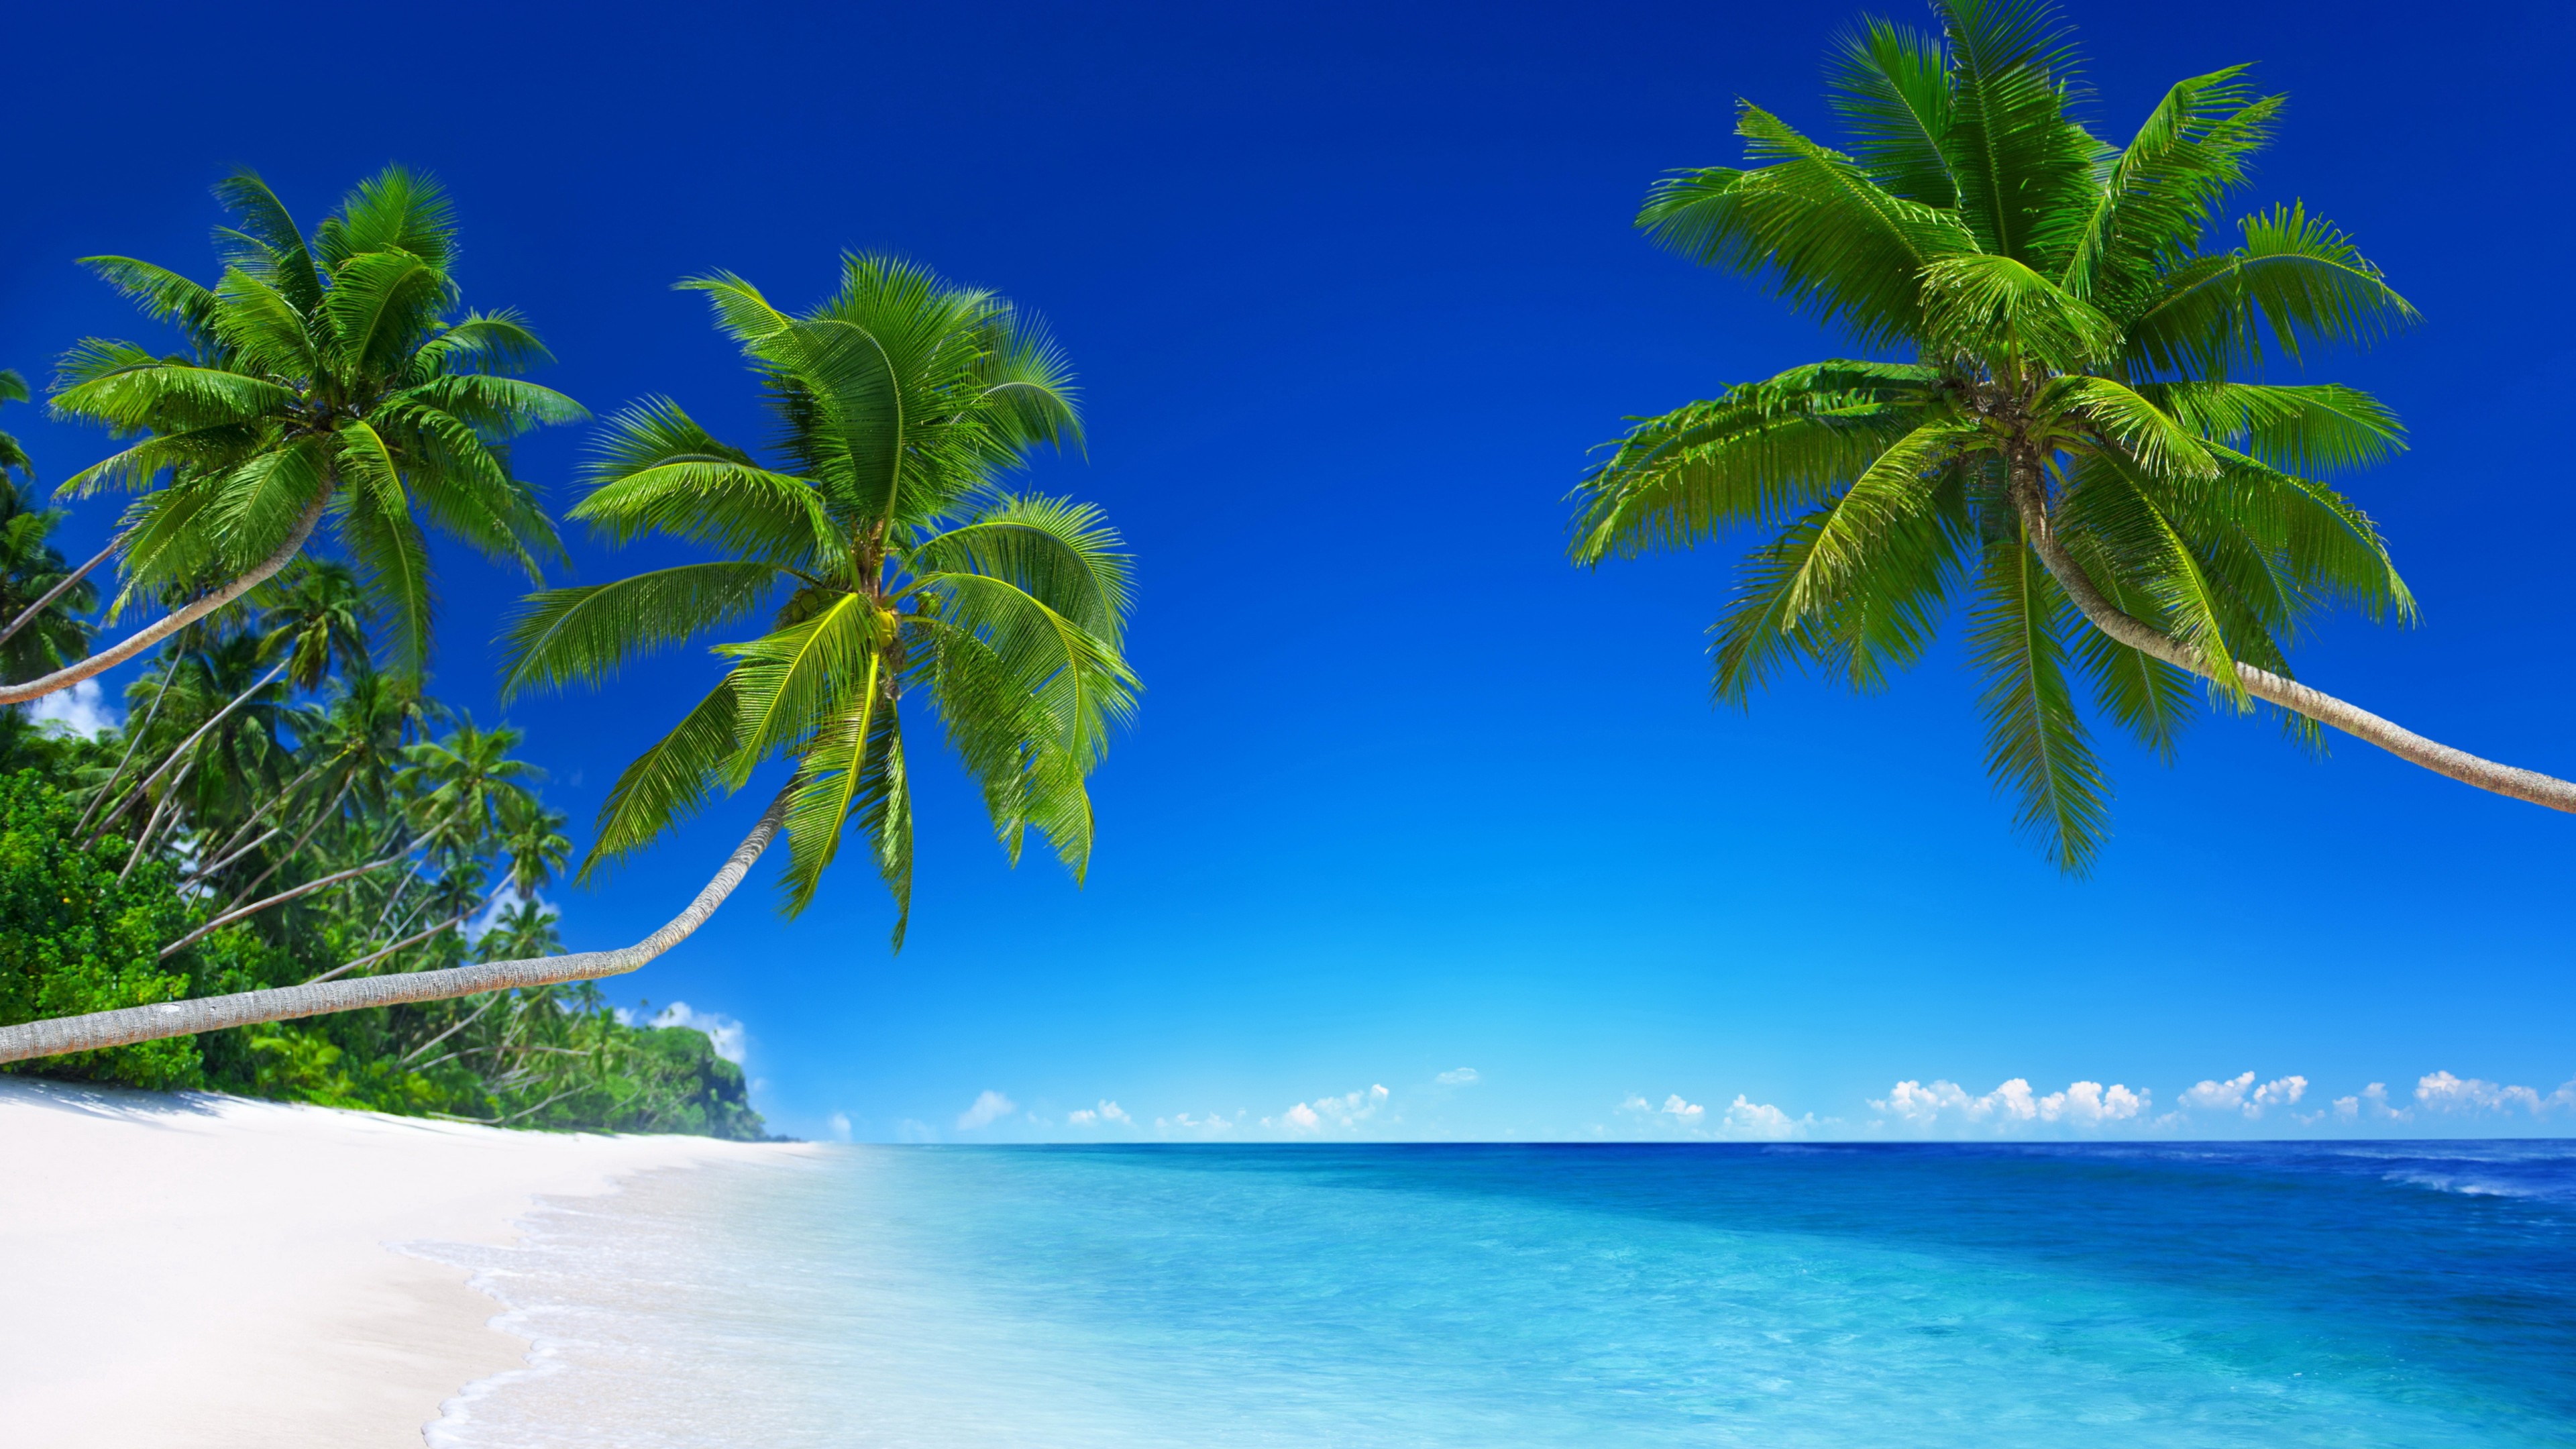 Blue Palm Tree PC Background 4k Free 3840x2160